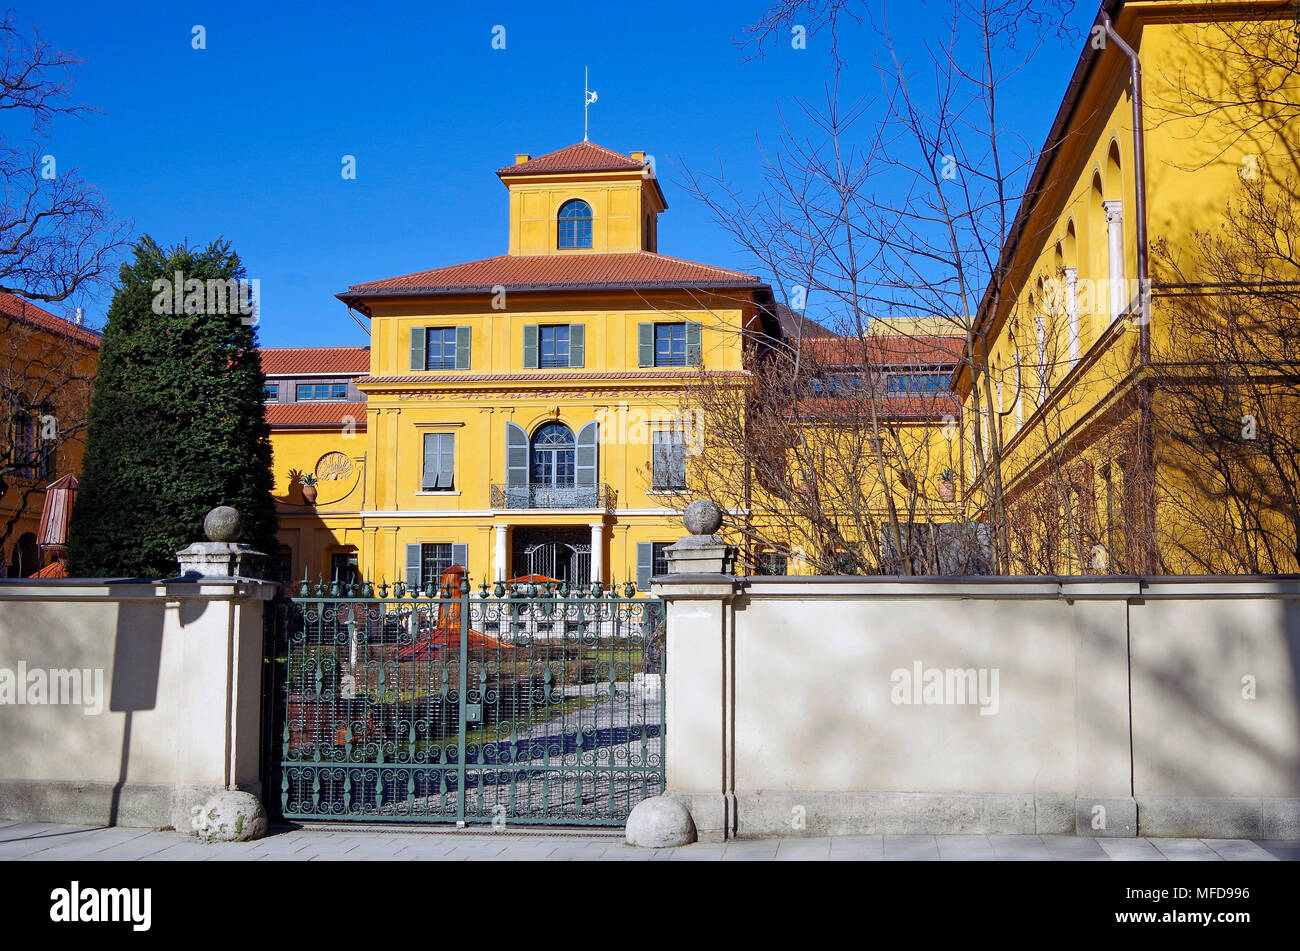 La Lenbachhaus, villa de style florentin, maison construite pour le peintre Franz von Lenbach, maintenant un musée et galerie photo Banque D'Images